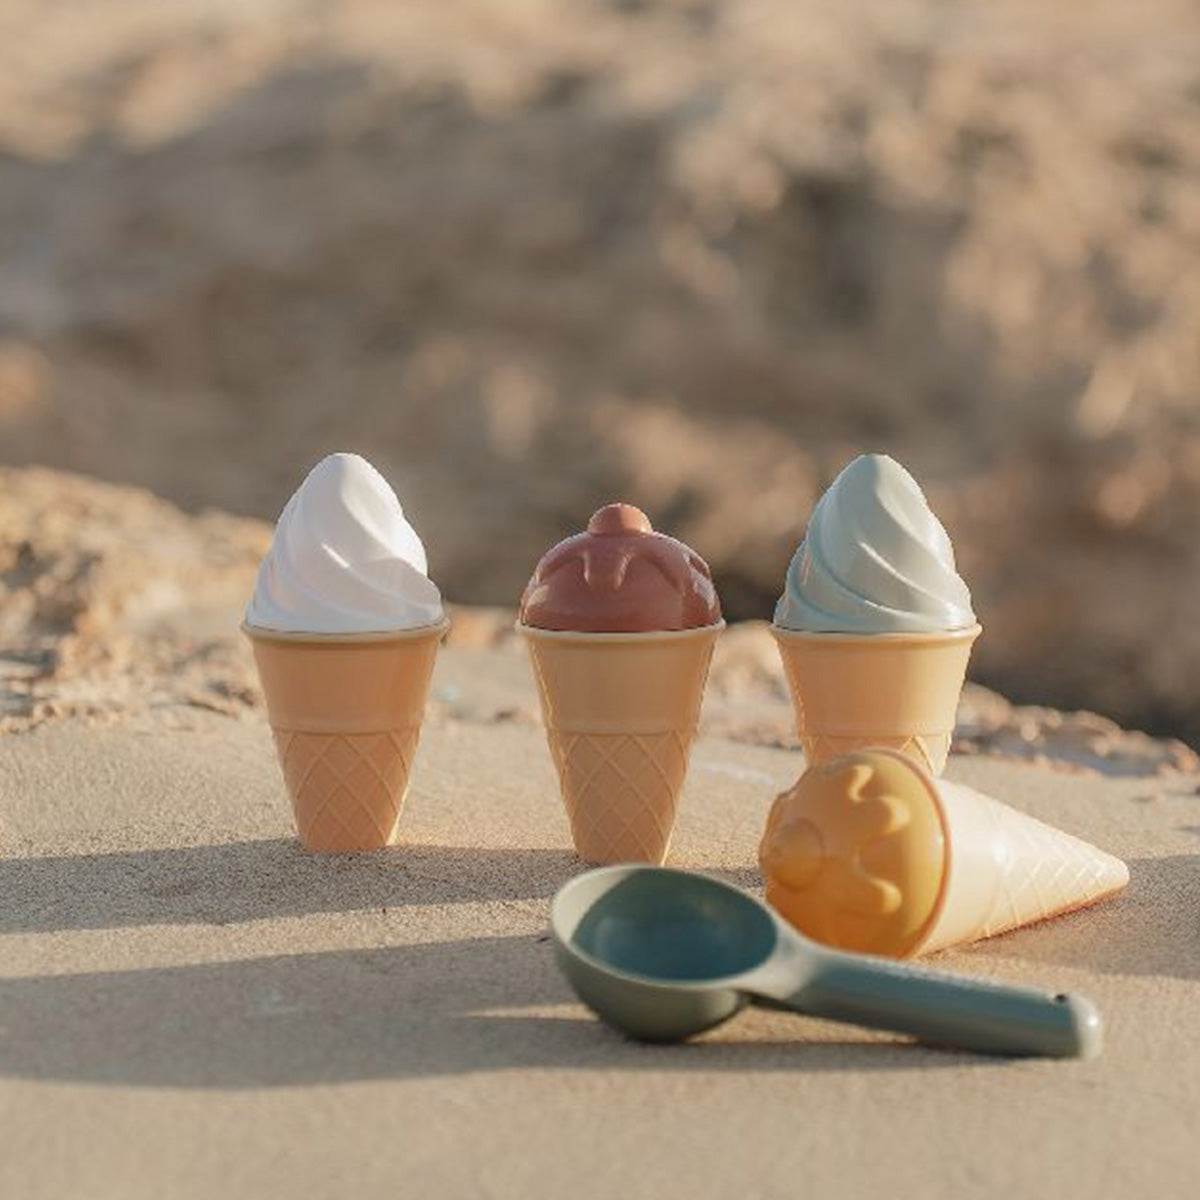 Maak de lekkerste ijsjes van zand met deze superleuke 9-delige ijsjes strandset van het merk Little Dutch. Met deze geweldige strandset kan je kindje de lekkerste zandijsjes maken. Superleuk voor op het strand of in de zandbak. VanZus